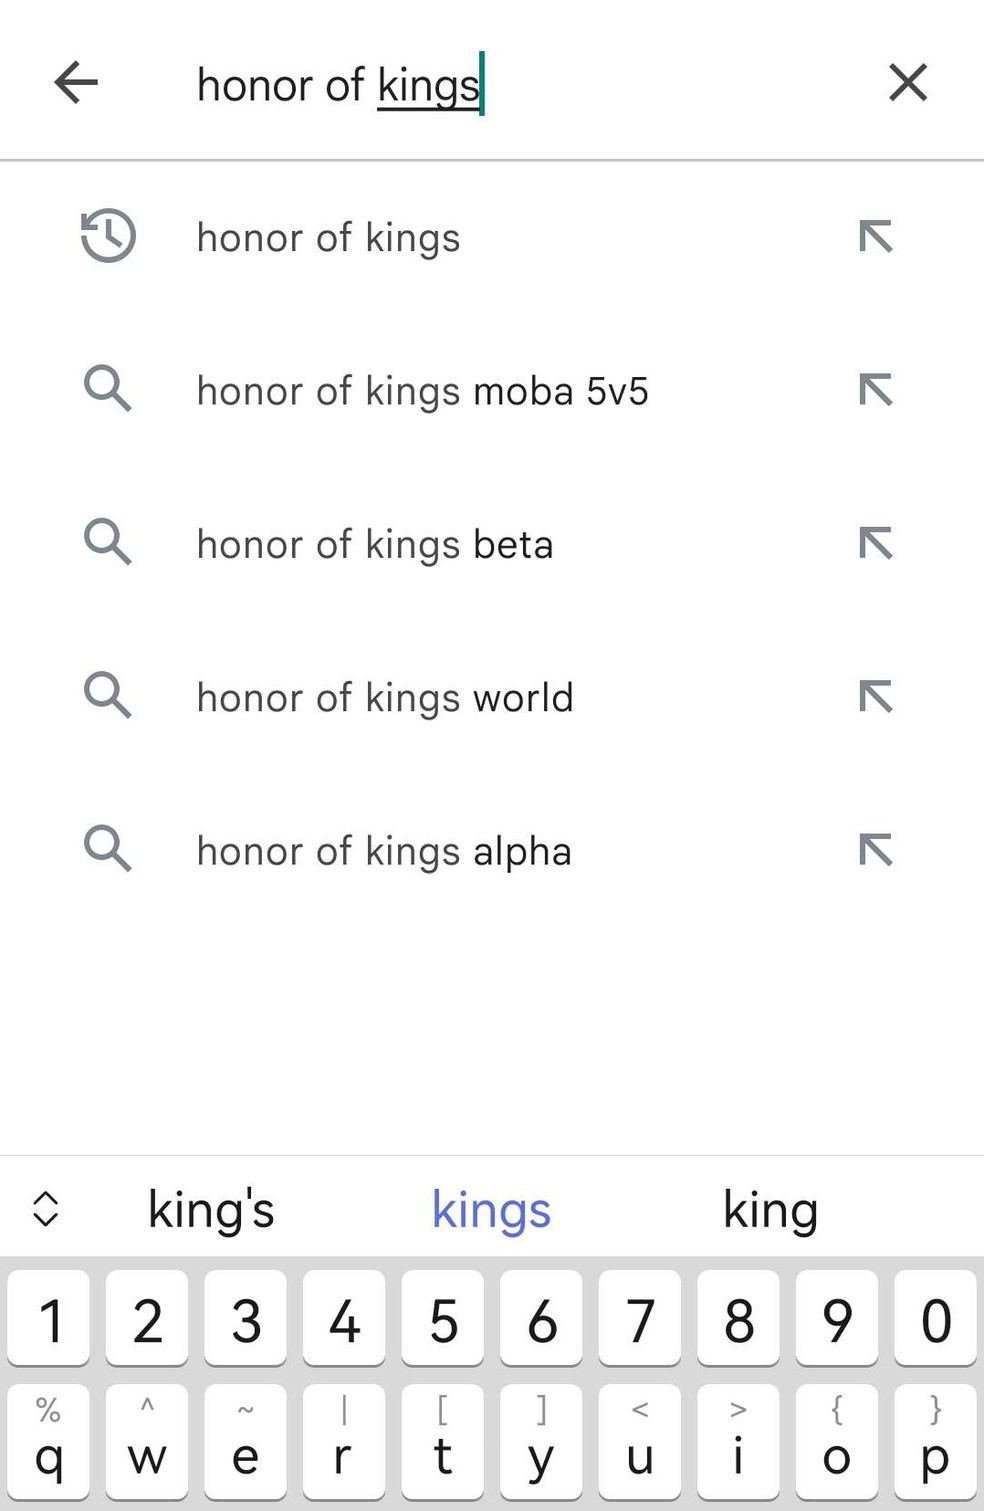 Pré-registro do Honor of Kings liberado no Brasil; veja como fazer